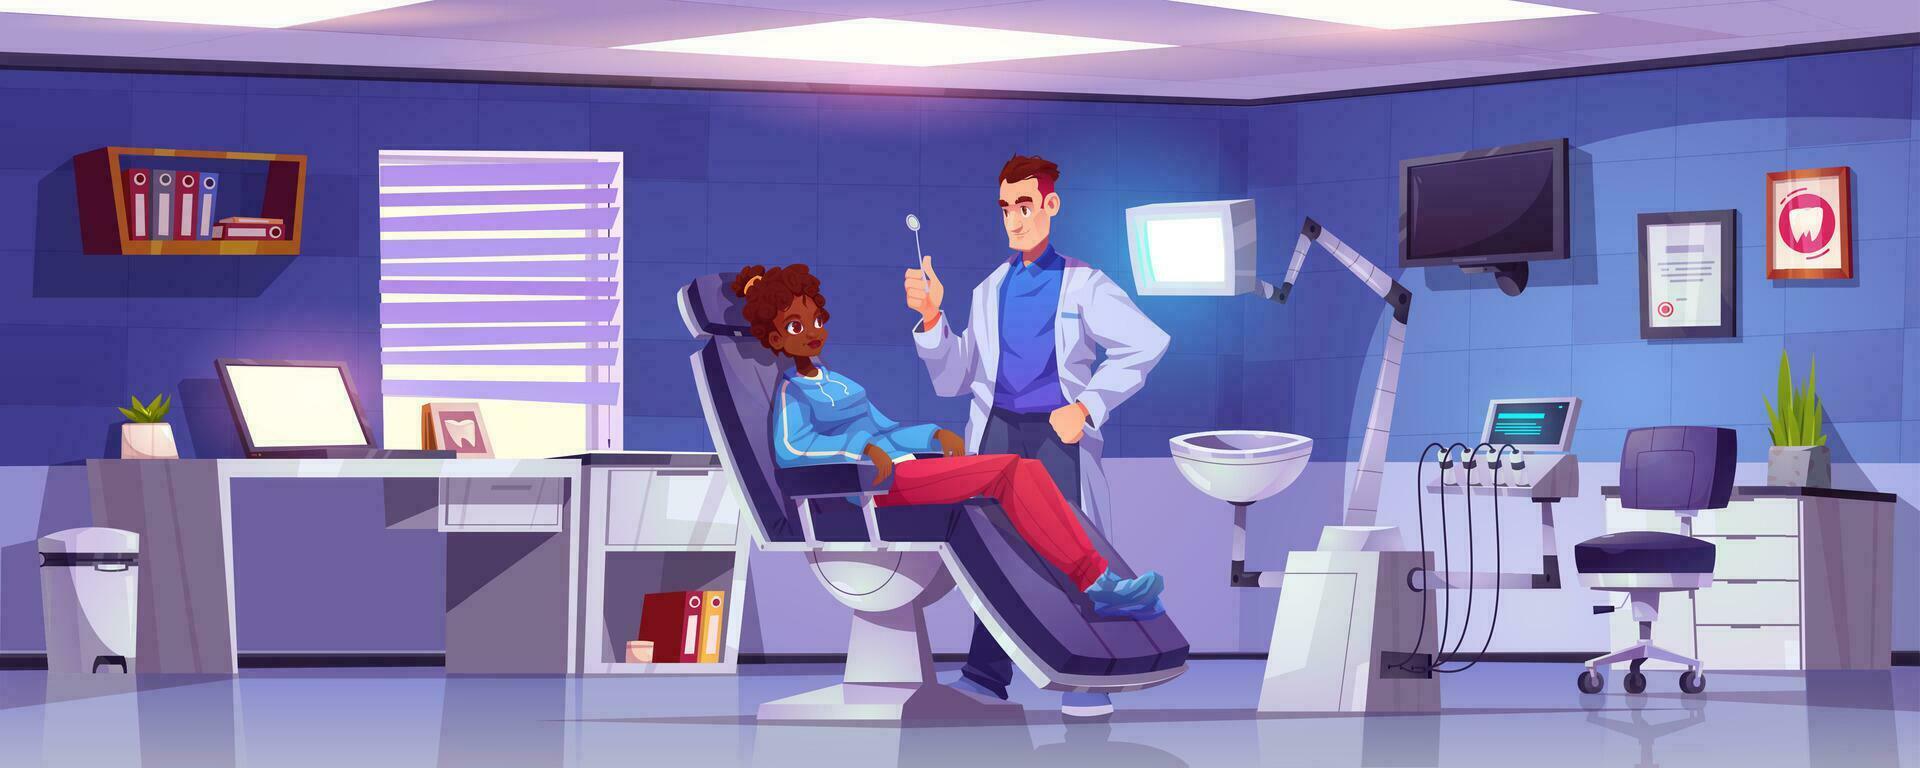 tandvård kontor med tandläkare läkare och patient vektor